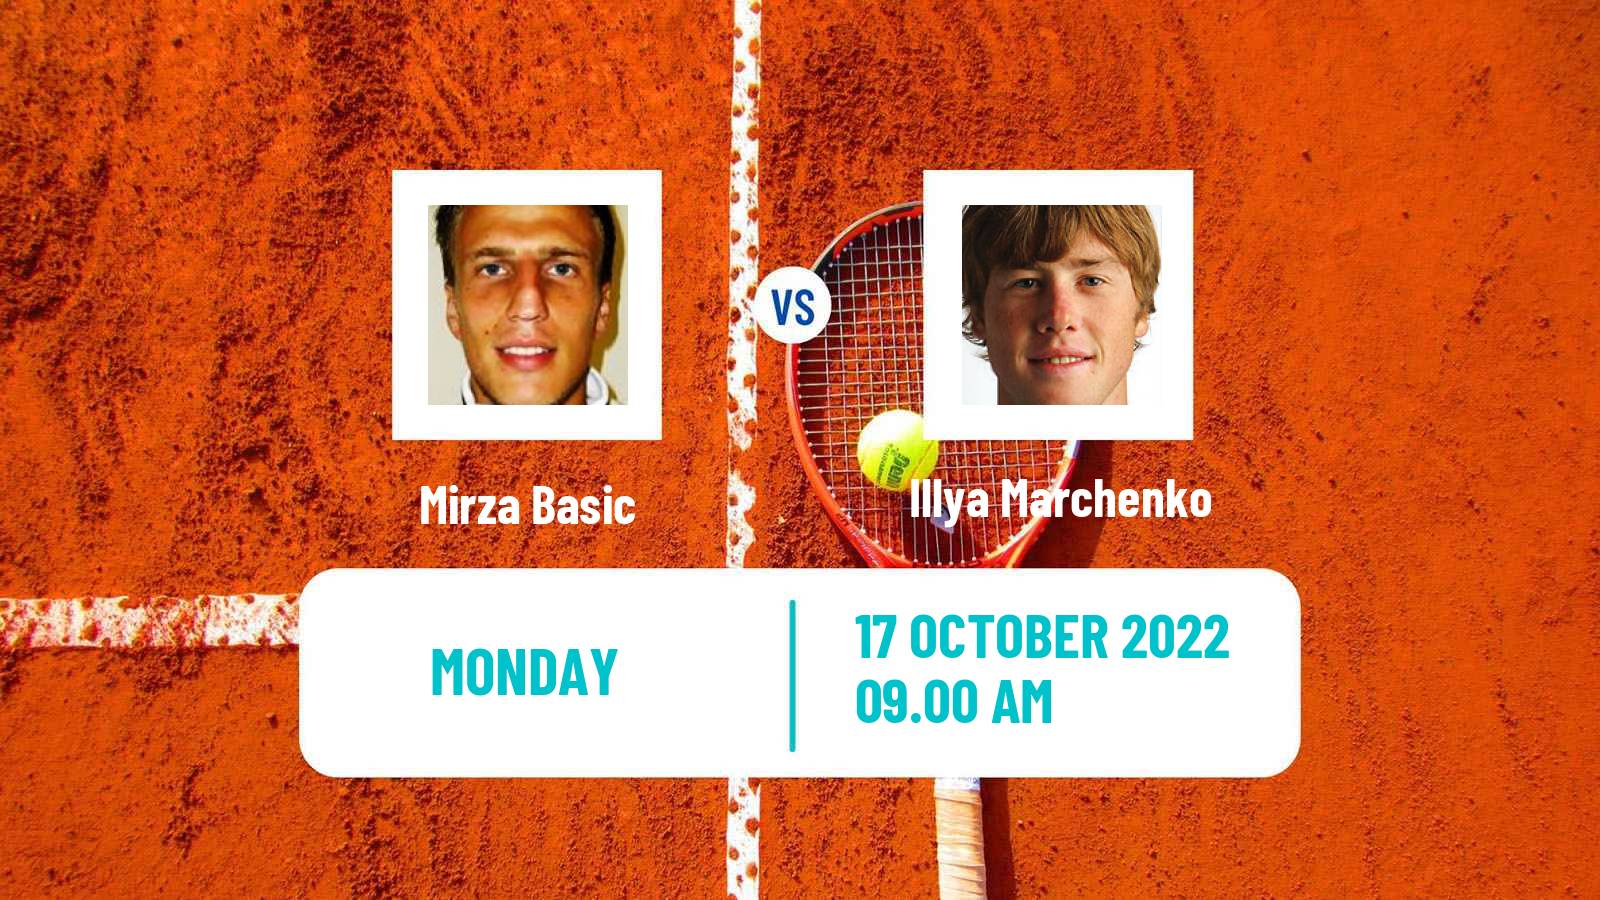 Tennis ATP Challenger Mirza Basic - Illya Marchenko